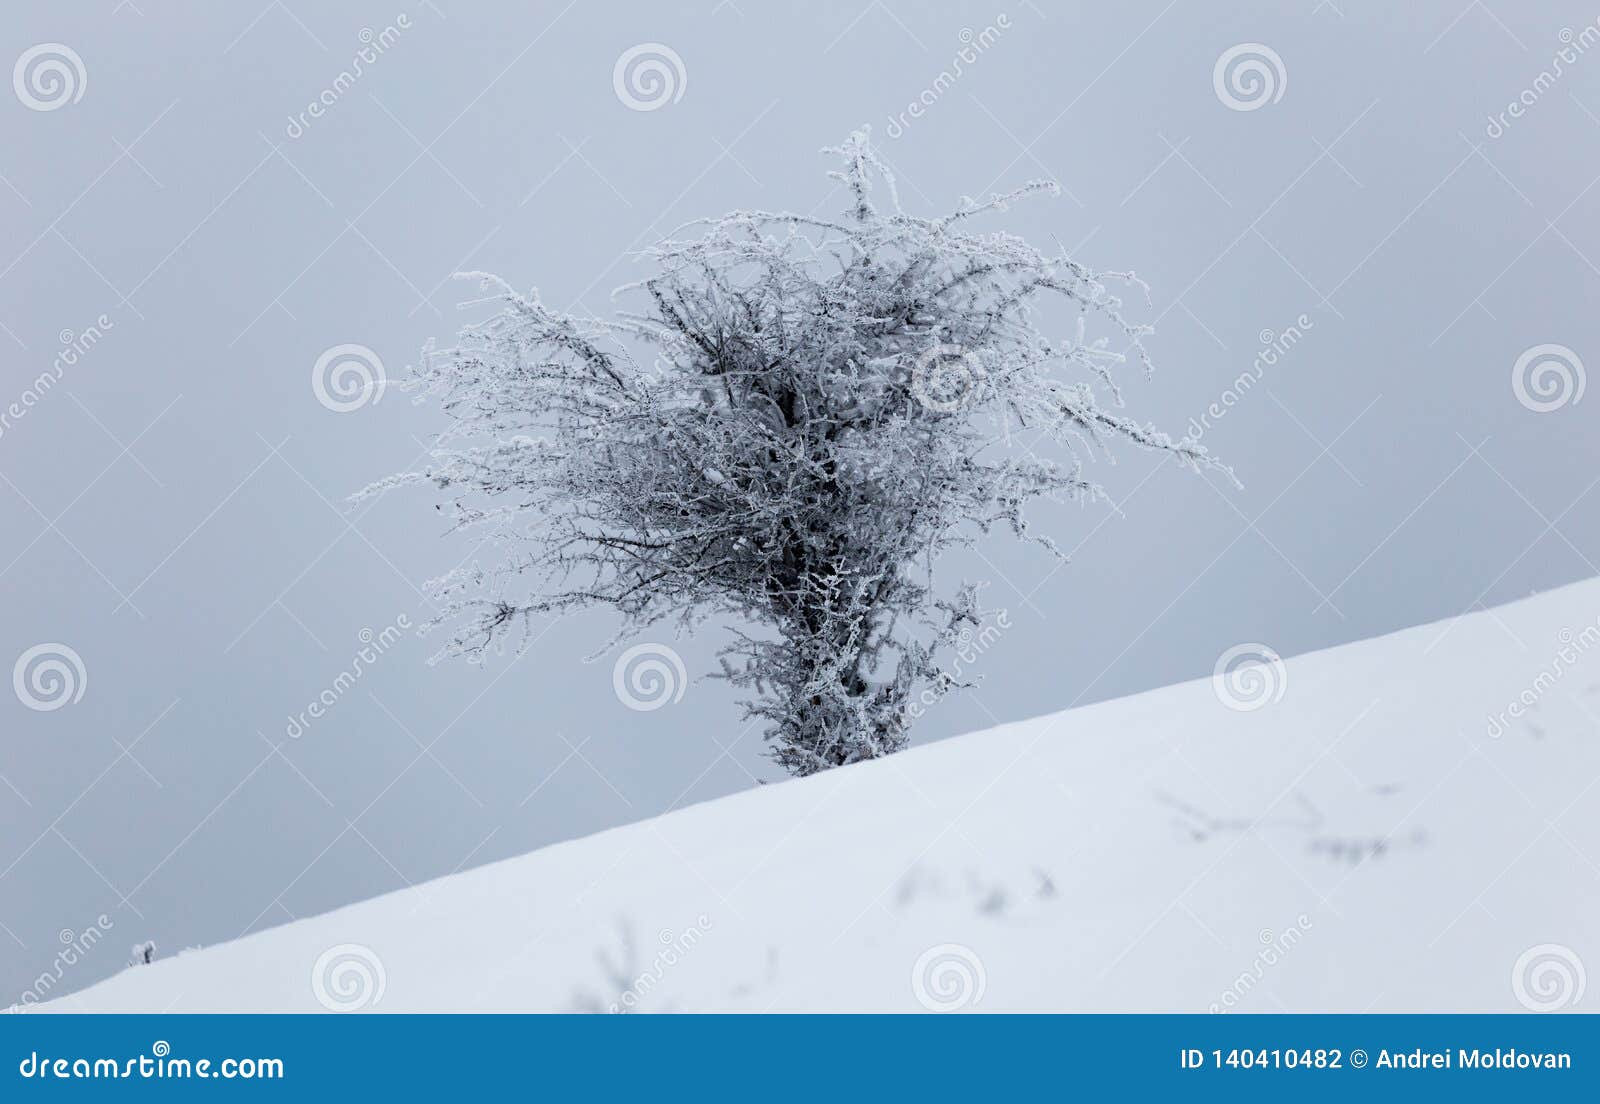 冻植物在罗马尼亚的山的一寒冷冬天天期间库存照片 图片包括有冻植物在罗马尼亚的山的一寒冷冬天天期间